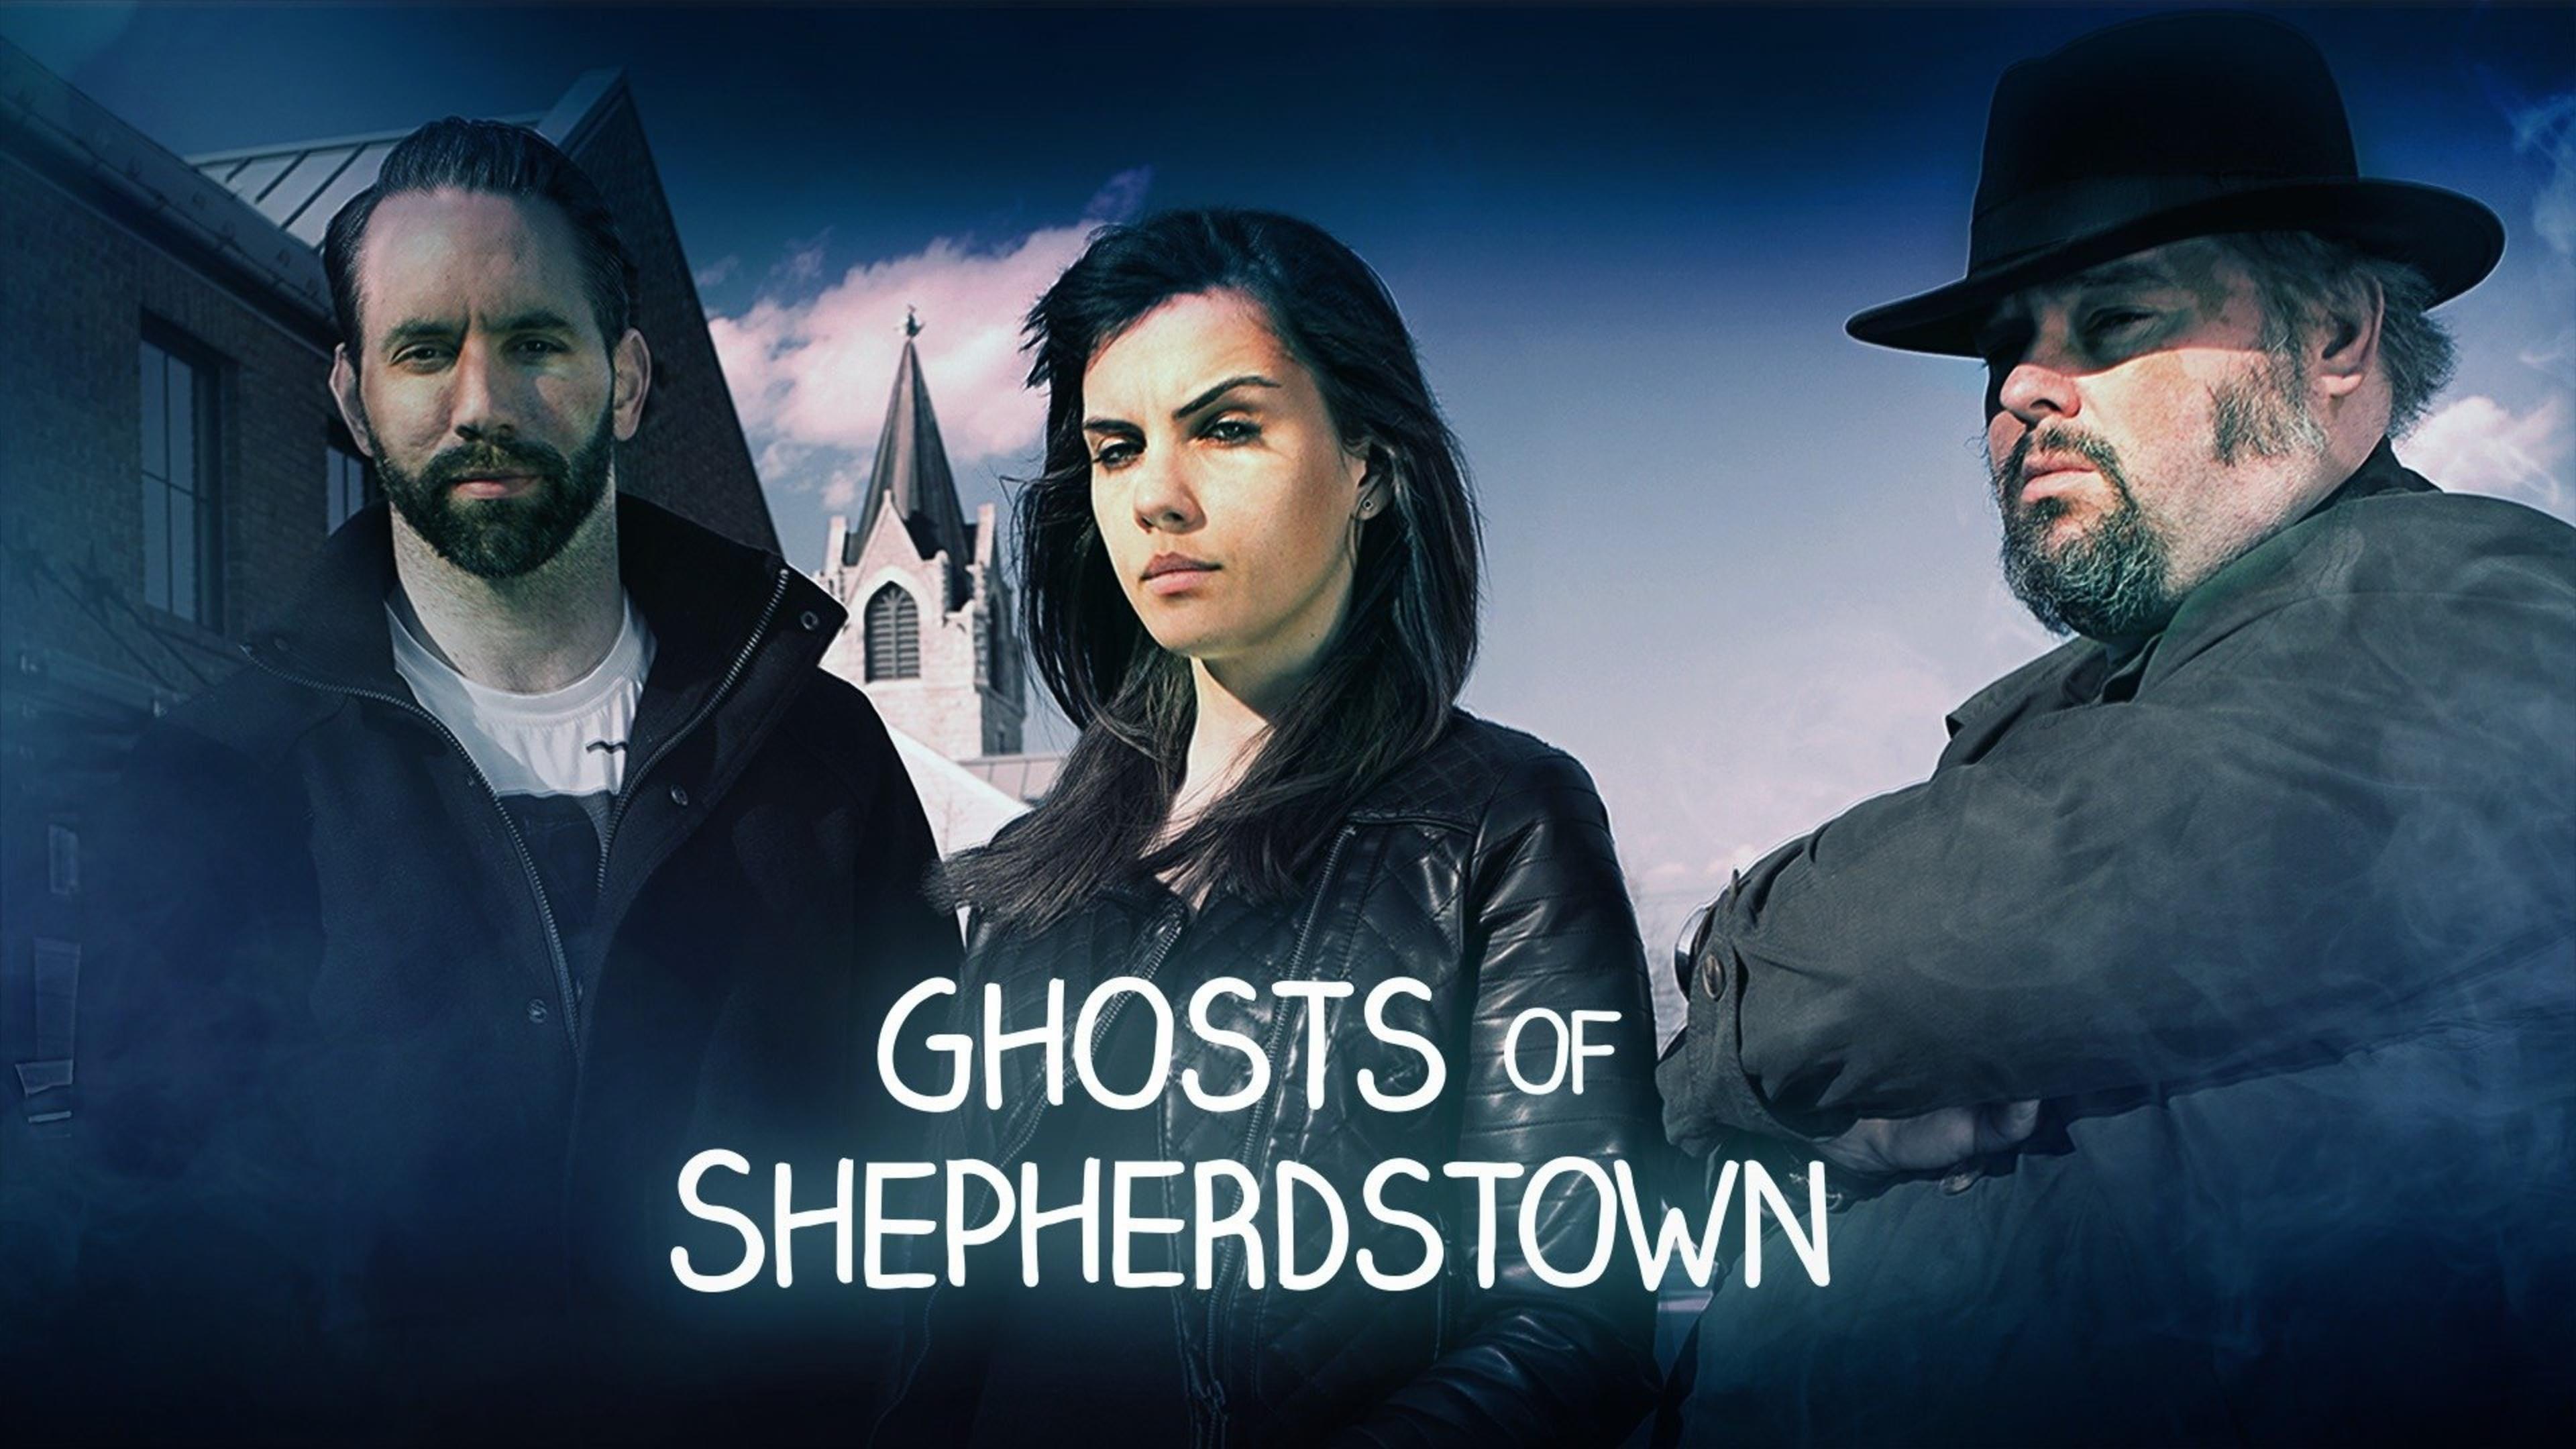 Ghosts of Shepherdstown backdrop